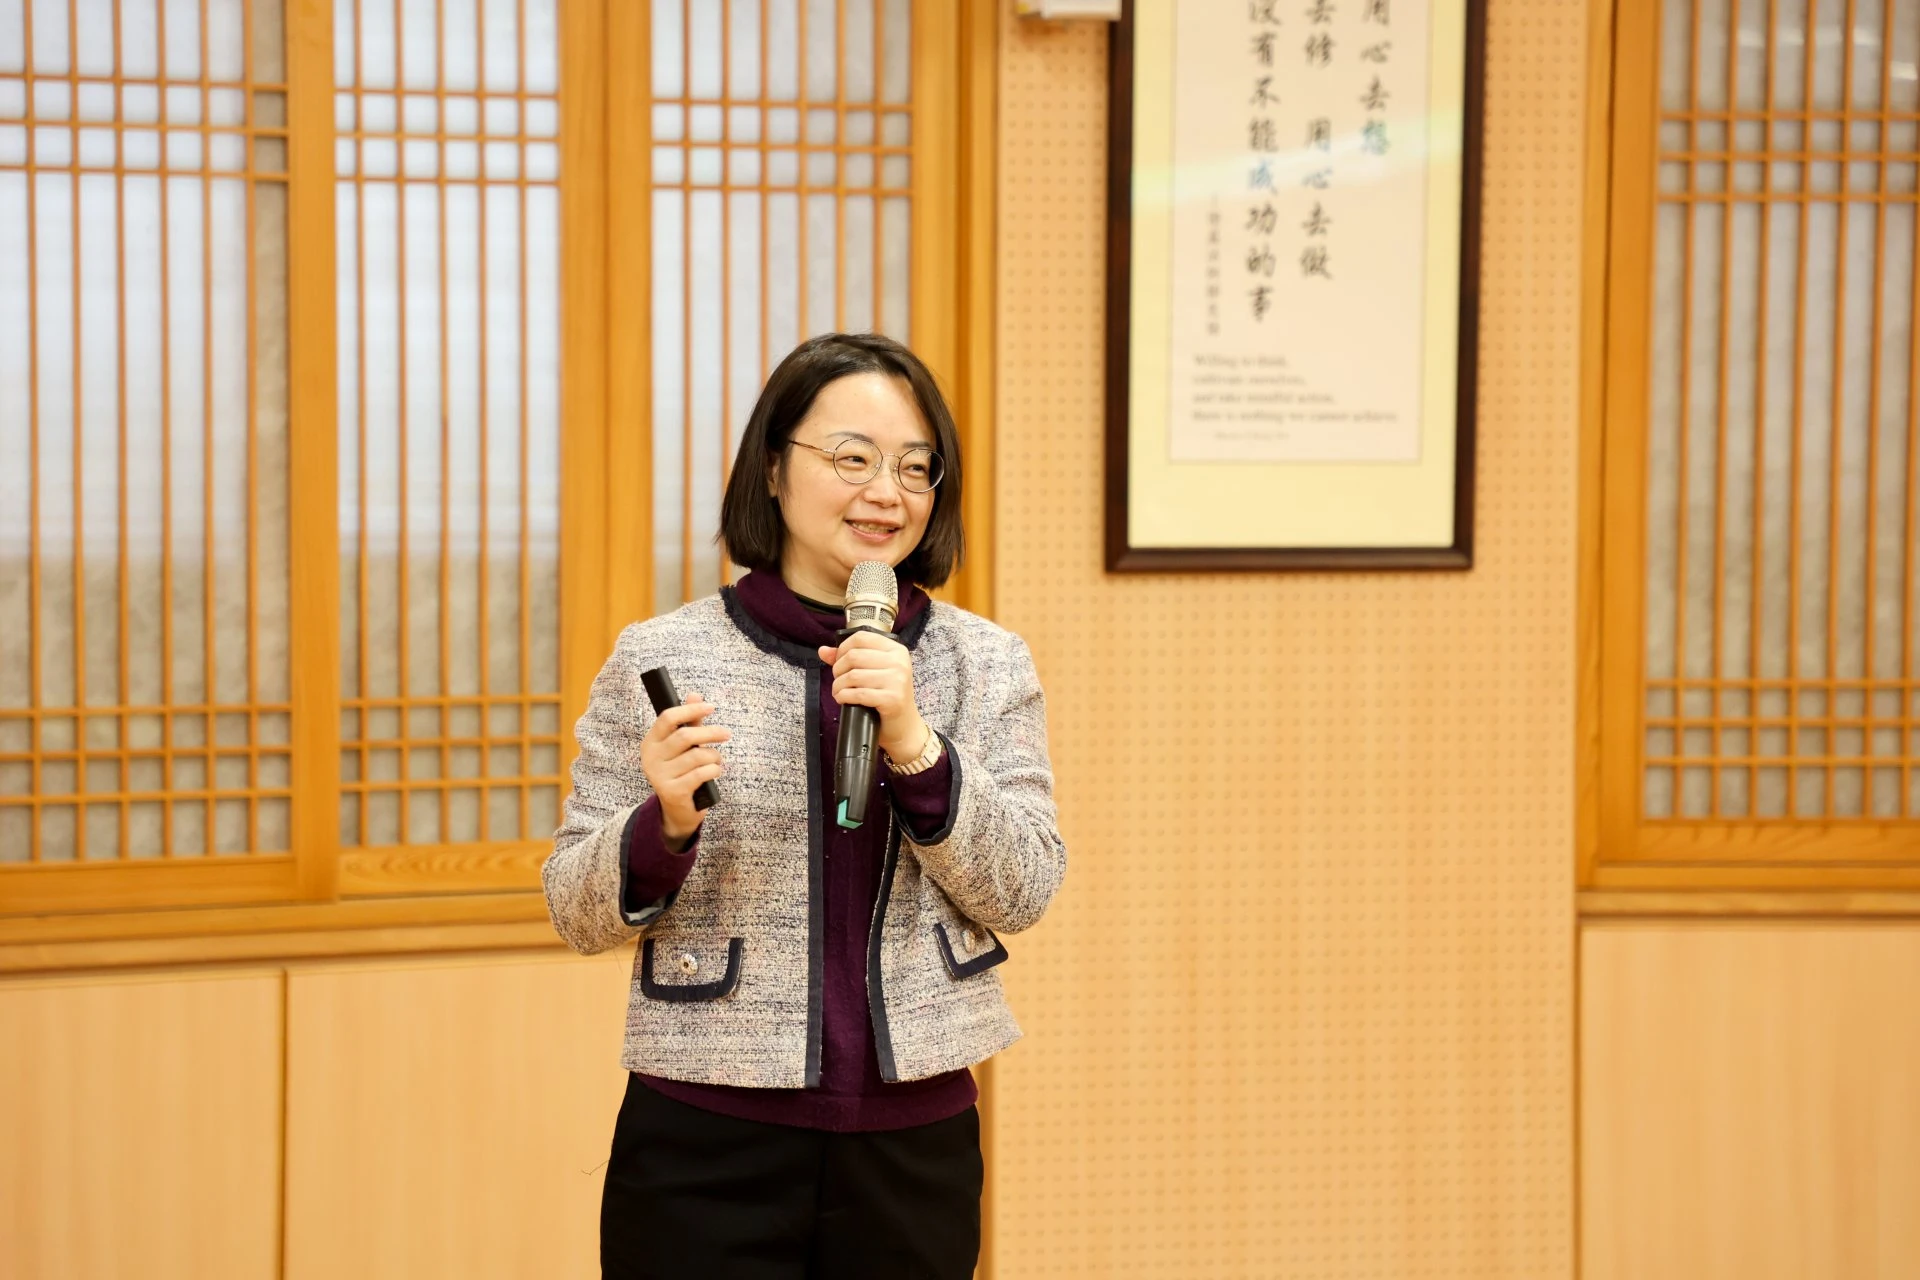 藥害救濟基金會副執行長黃鈺媖律師來介紹醫預法及相關子法的內容。